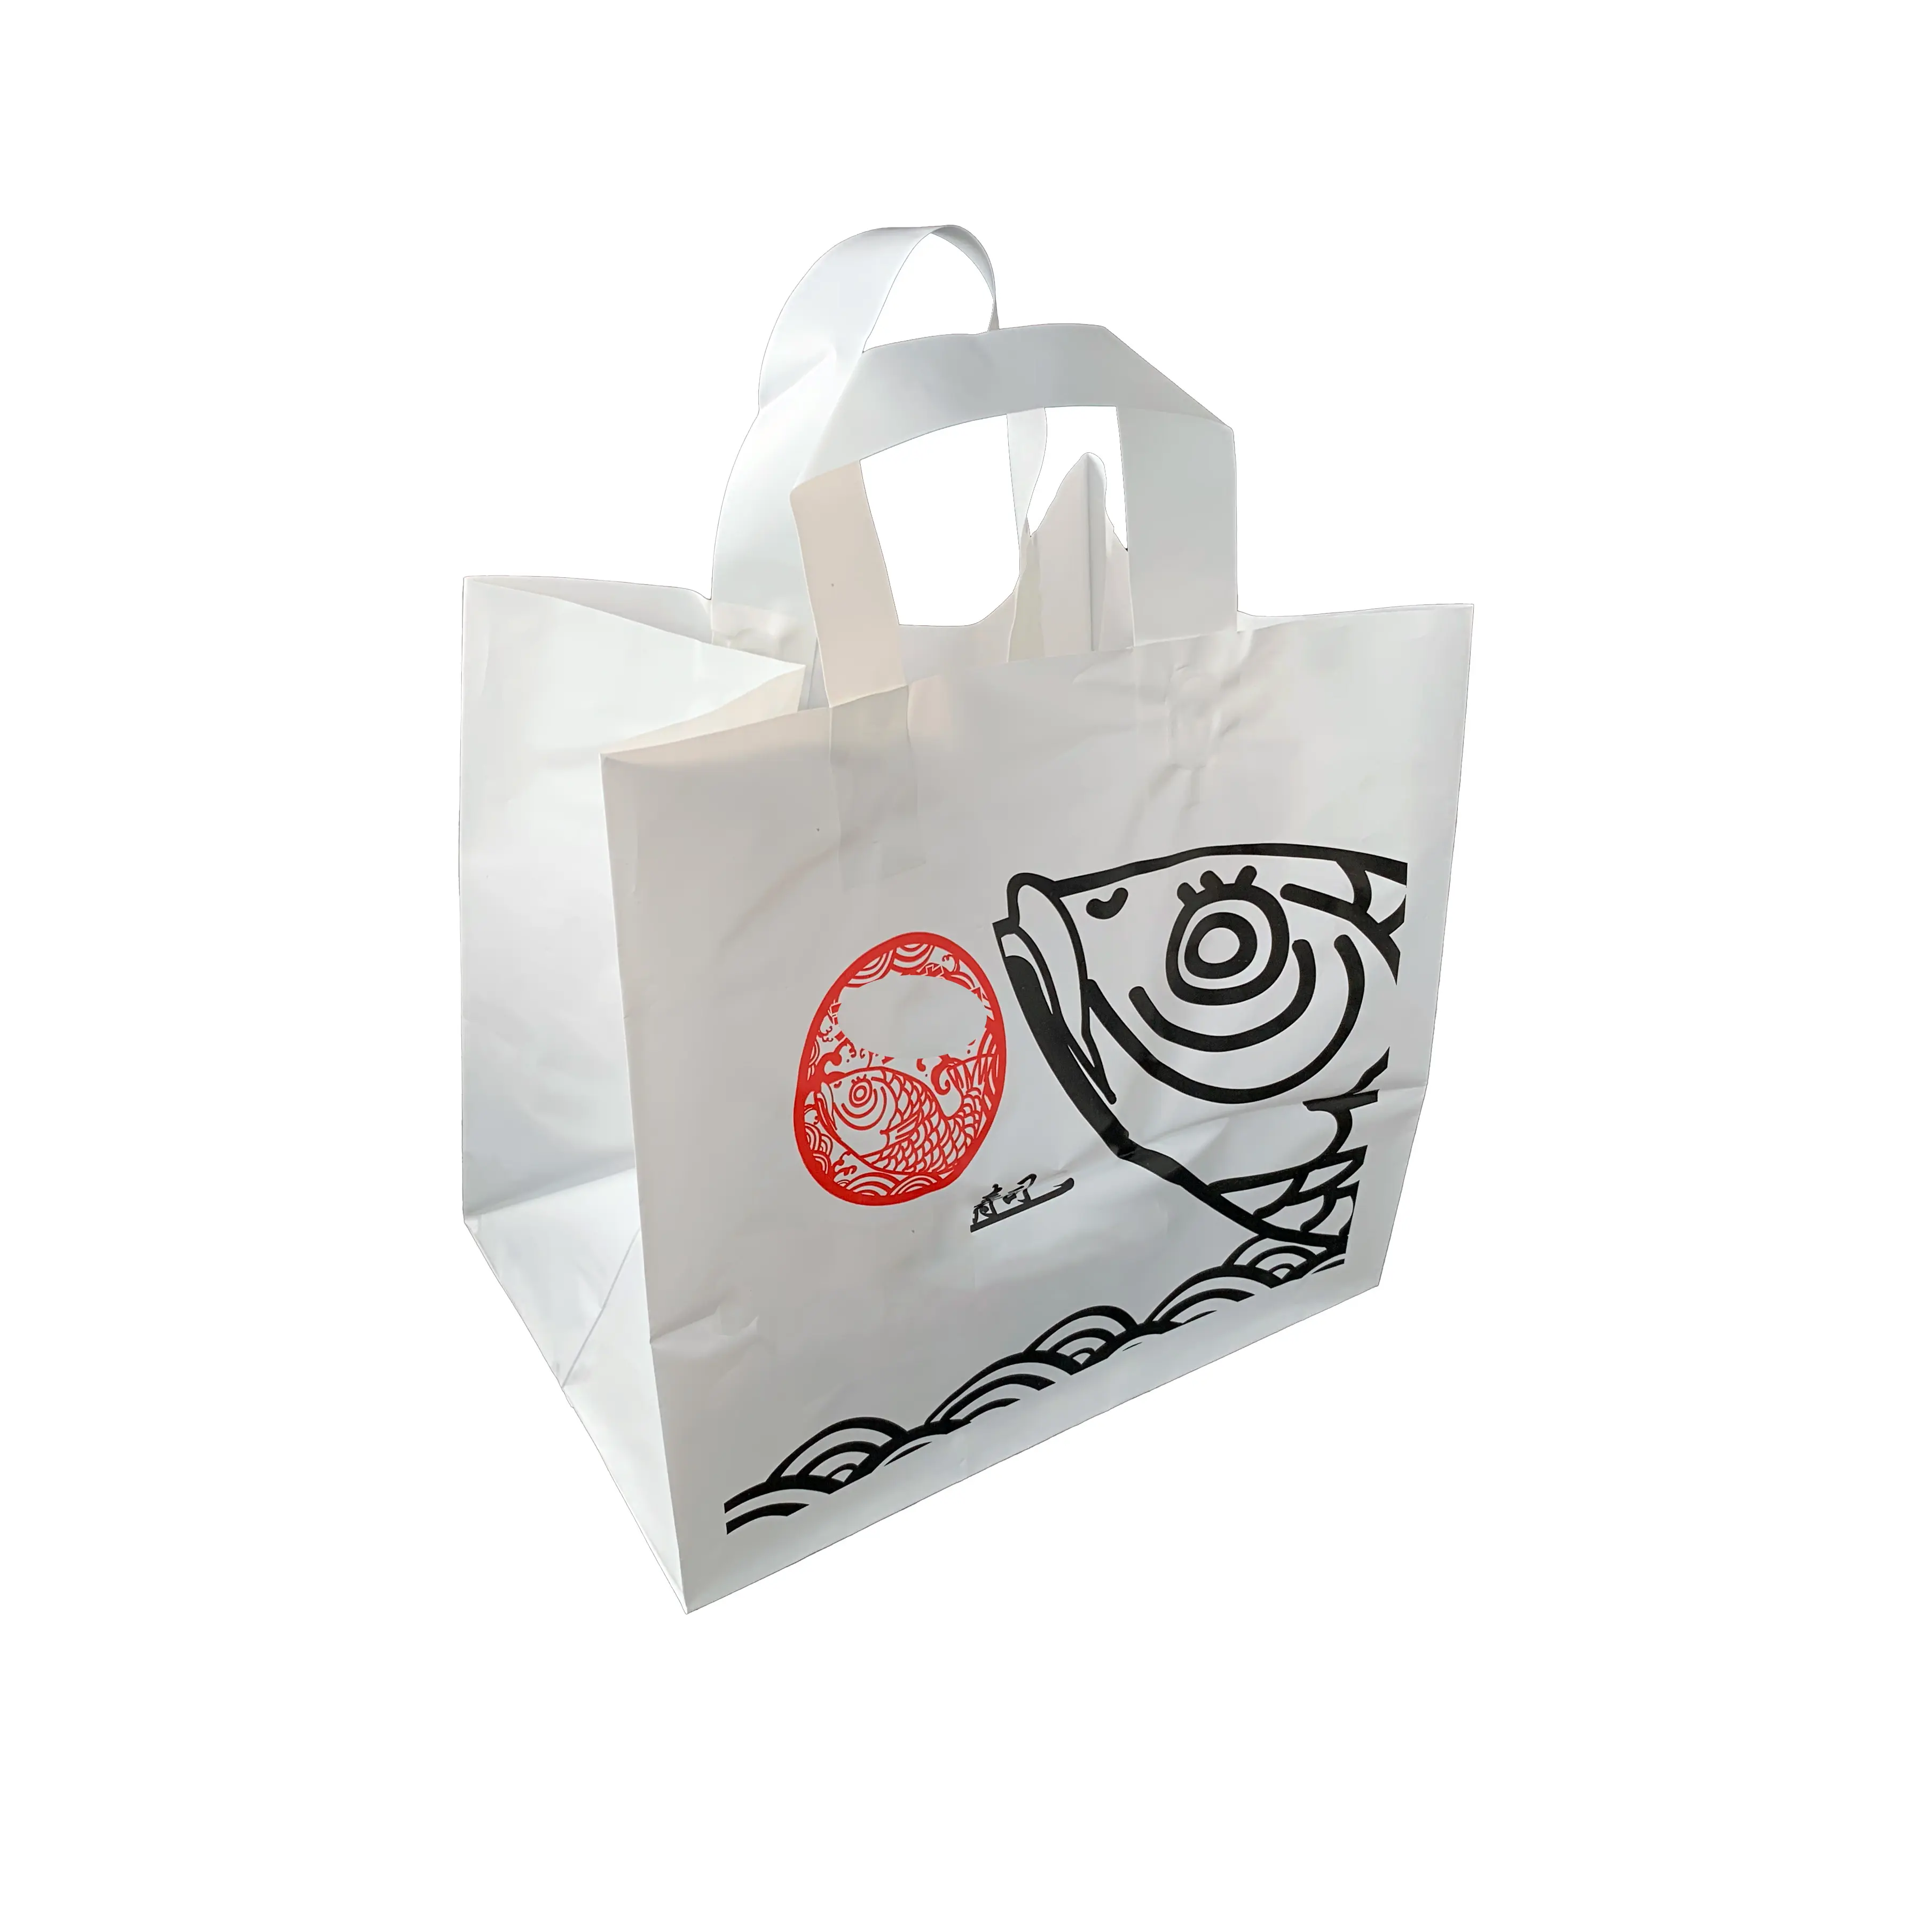 ロゴ付きカスタムショッピングバッグつや消しプラスチック製ショッピングバッグハンドル付きレストラン持ち運び用バッグソフトループ付き